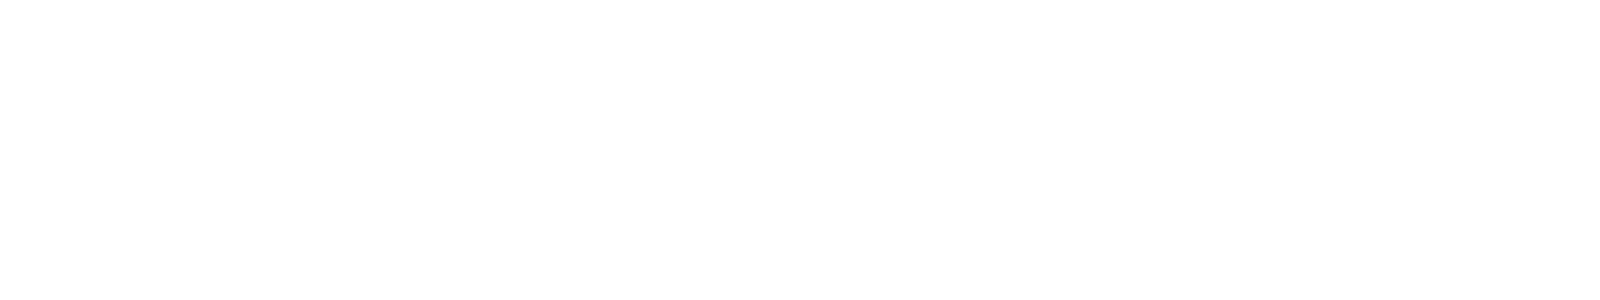 s7law logo biale2 - Formuła S